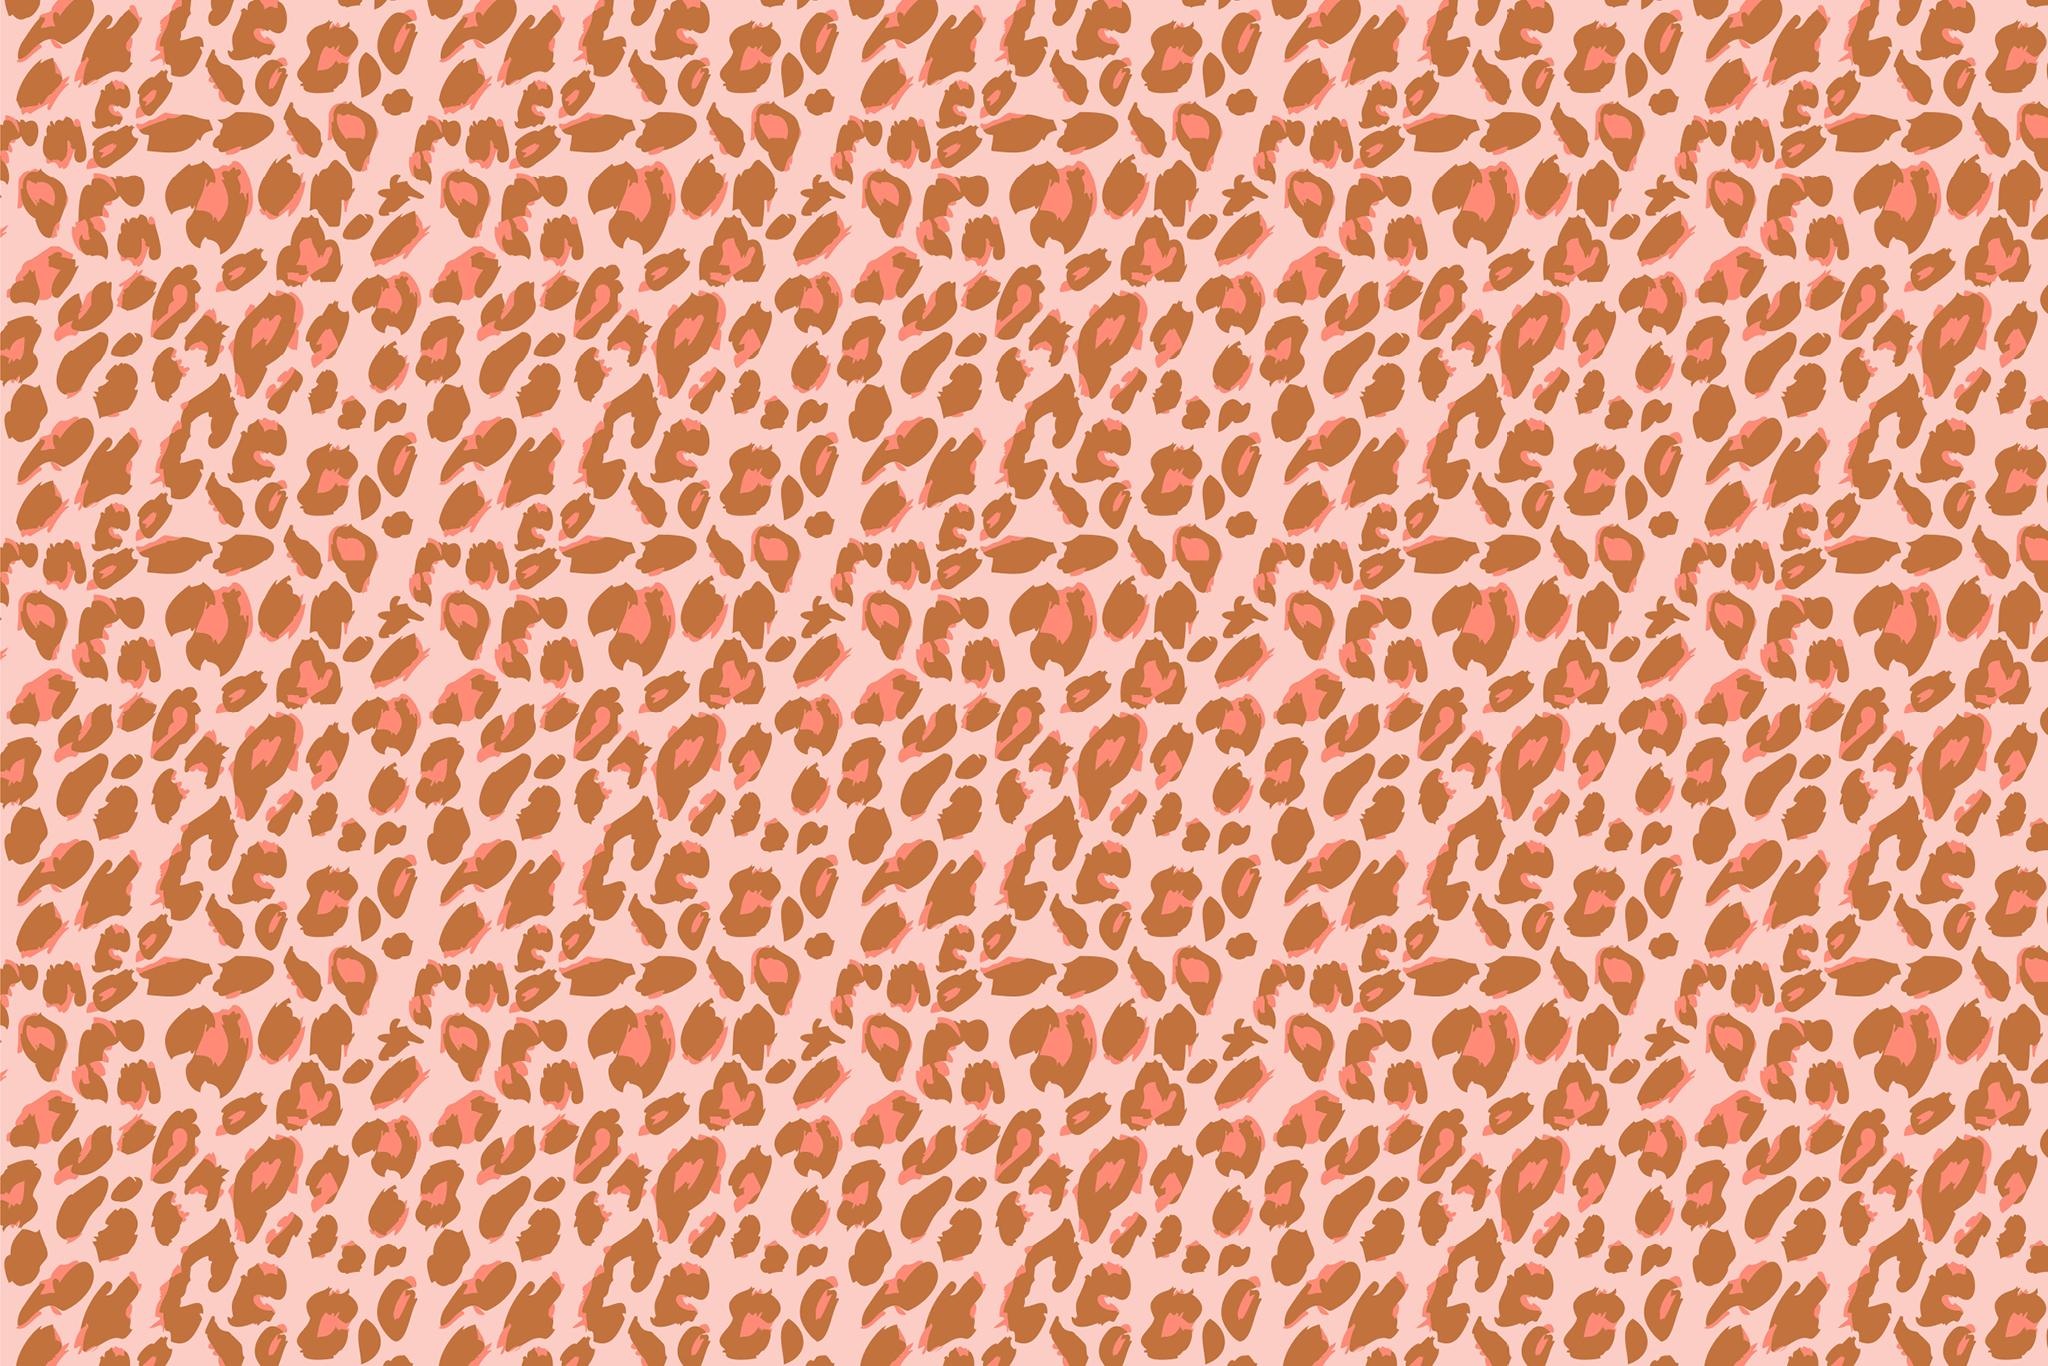 Cheetah Print Wallpapers for desktop and phone